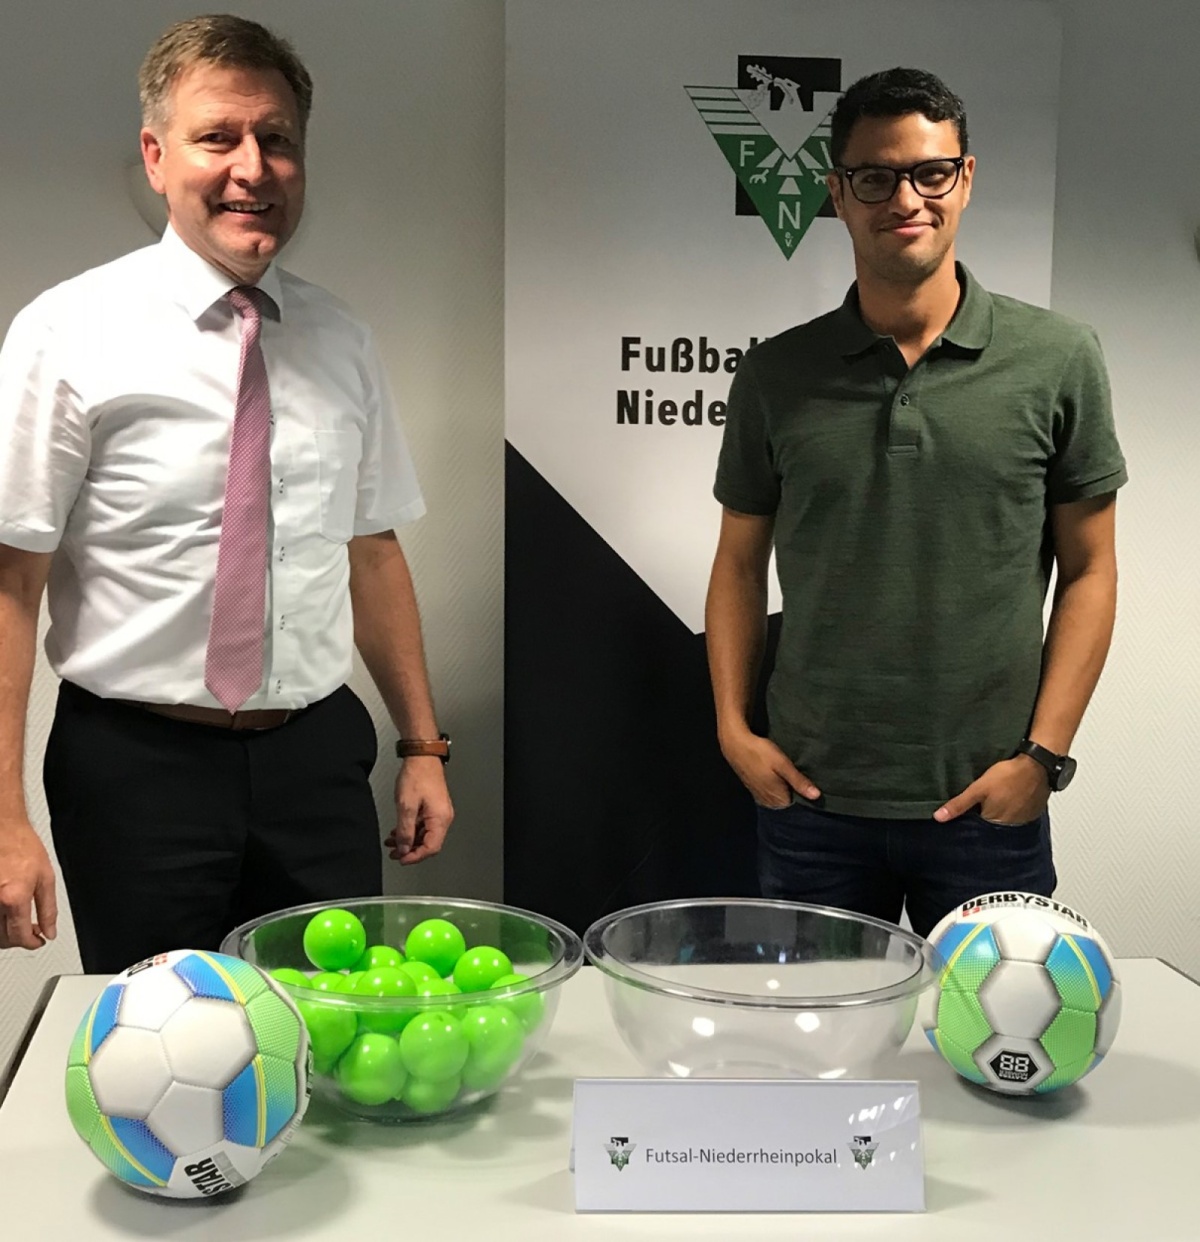 Futsal-Niederrheinpokal 2019/2020 ausgelost: Knaller im Achtelfinale